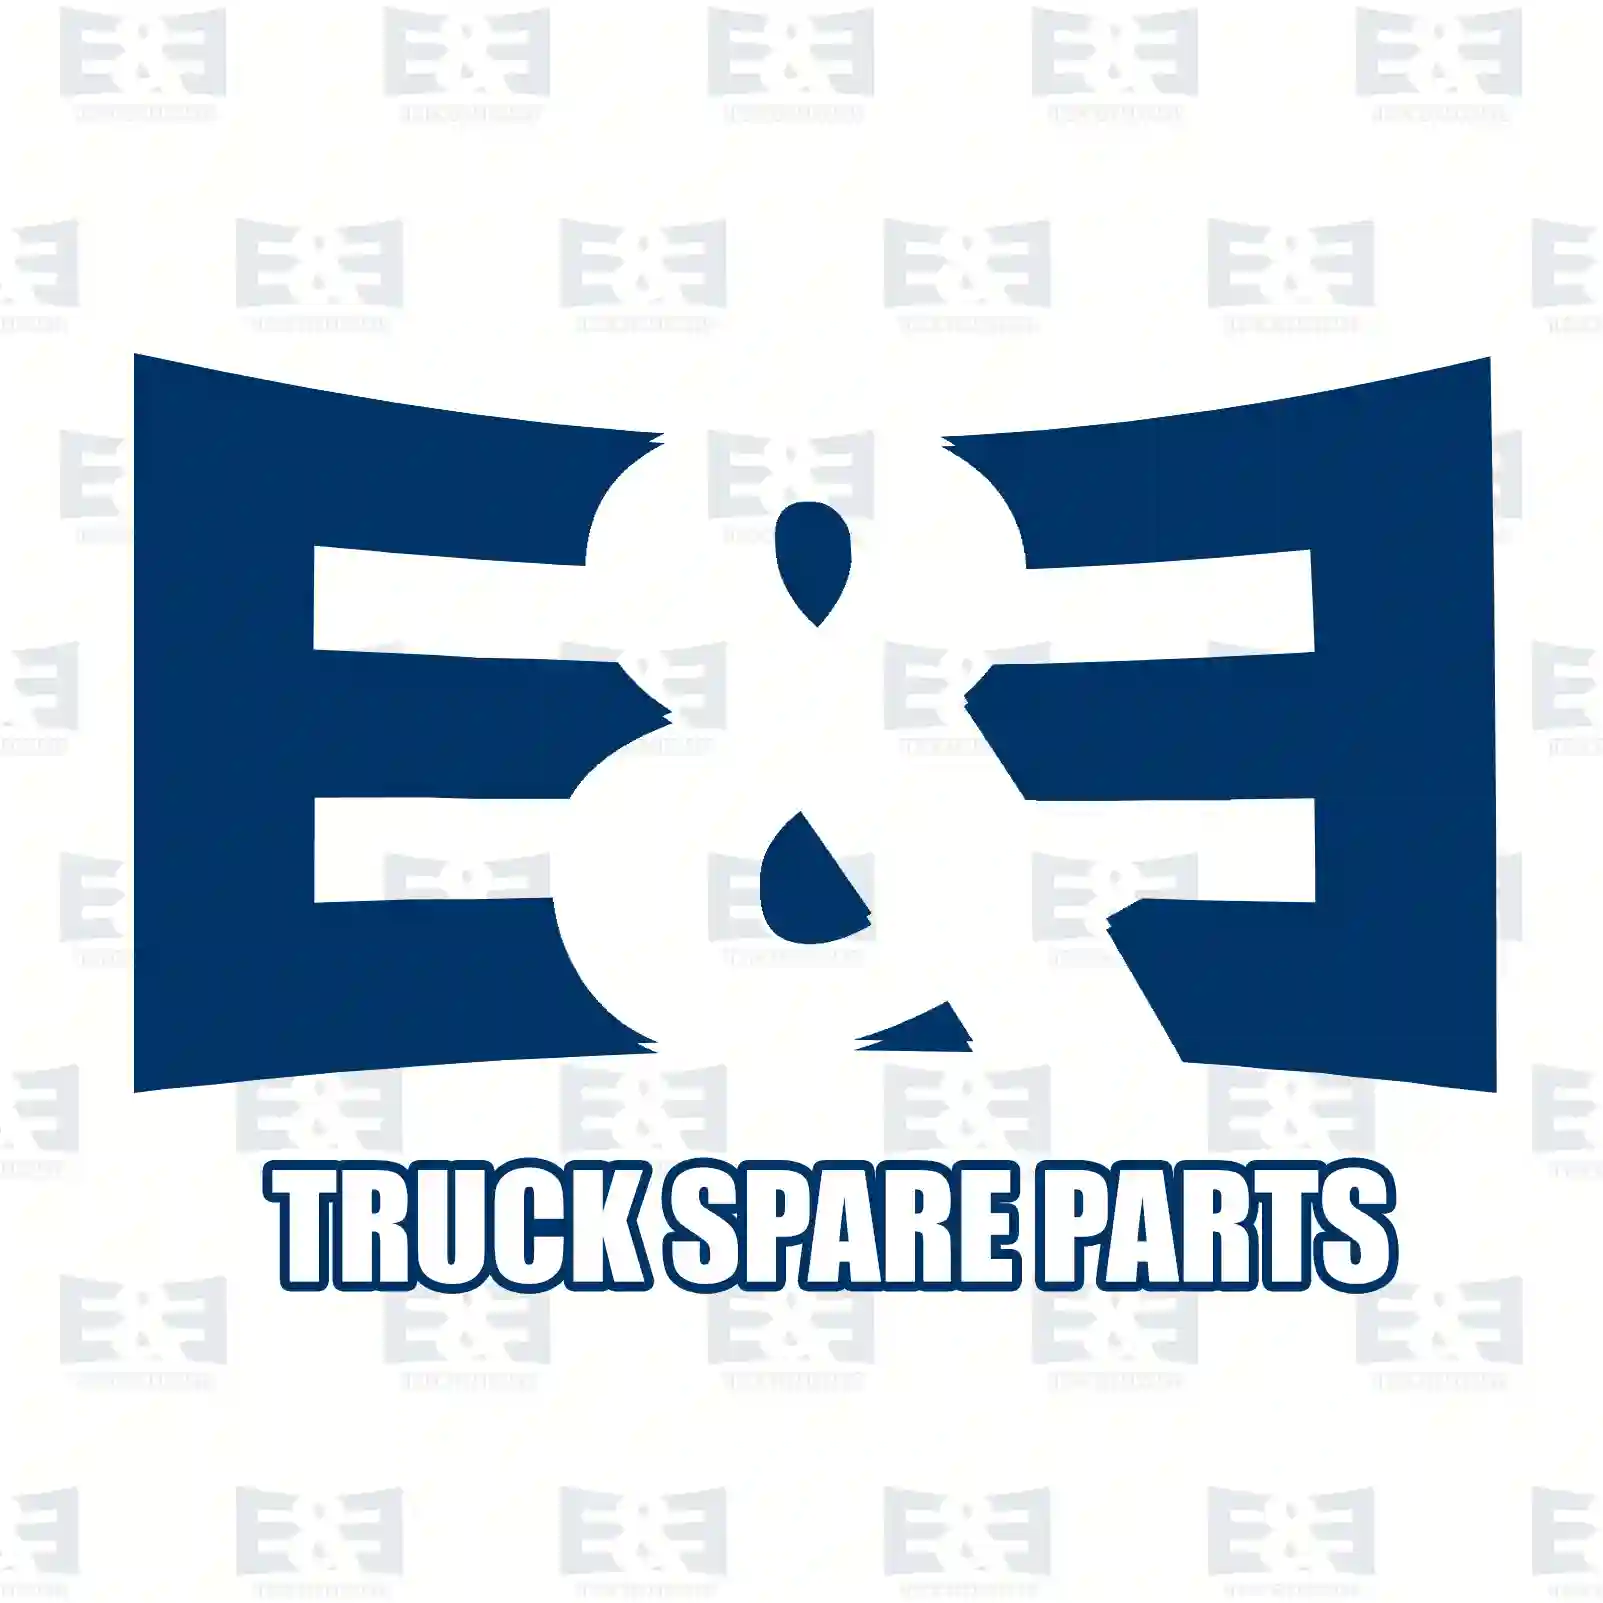 O-ring, 2E2285721, 1692506, 804723, ZG02917-0008, ||  2E2285721 E&E Truck Spare Parts | Truck Spare Parts, Auotomotive Spare Parts O-ring, 2E2285721, 1692506, 804723, ZG02917-0008, ||  2E2285721 E&E Truck Spare Parts | Truck Spare Parts, Auotomotive Spare Parts